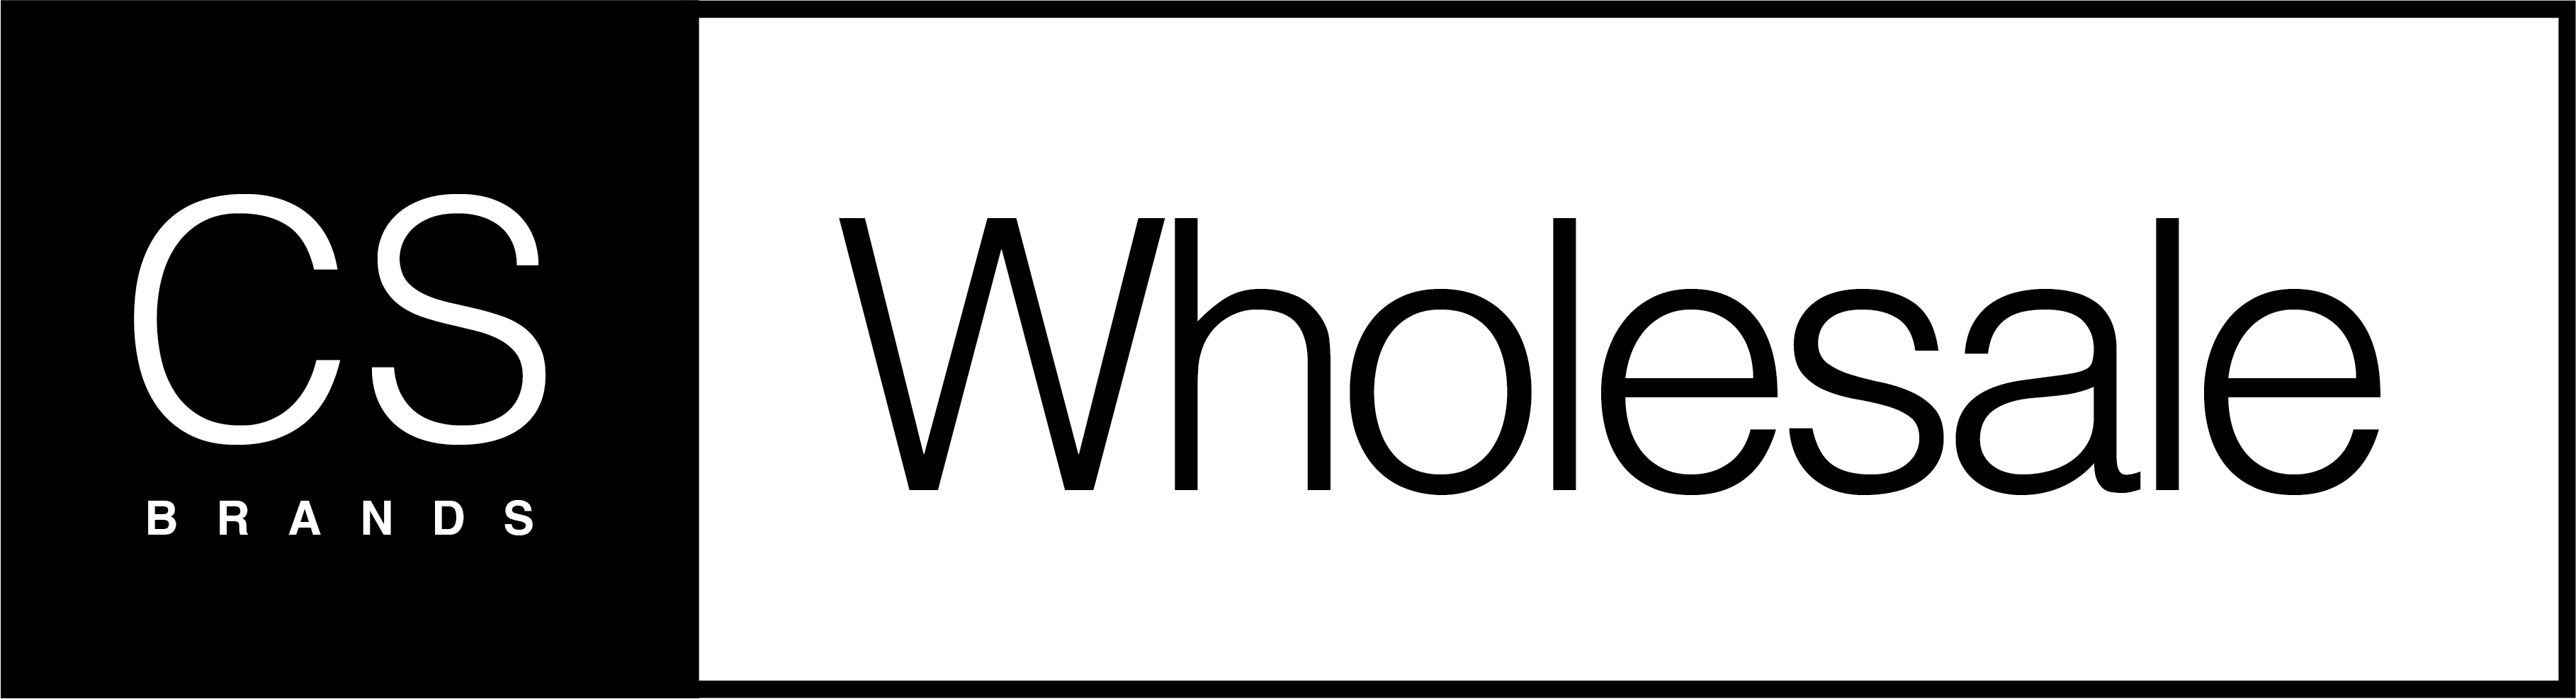 CS Wholesale